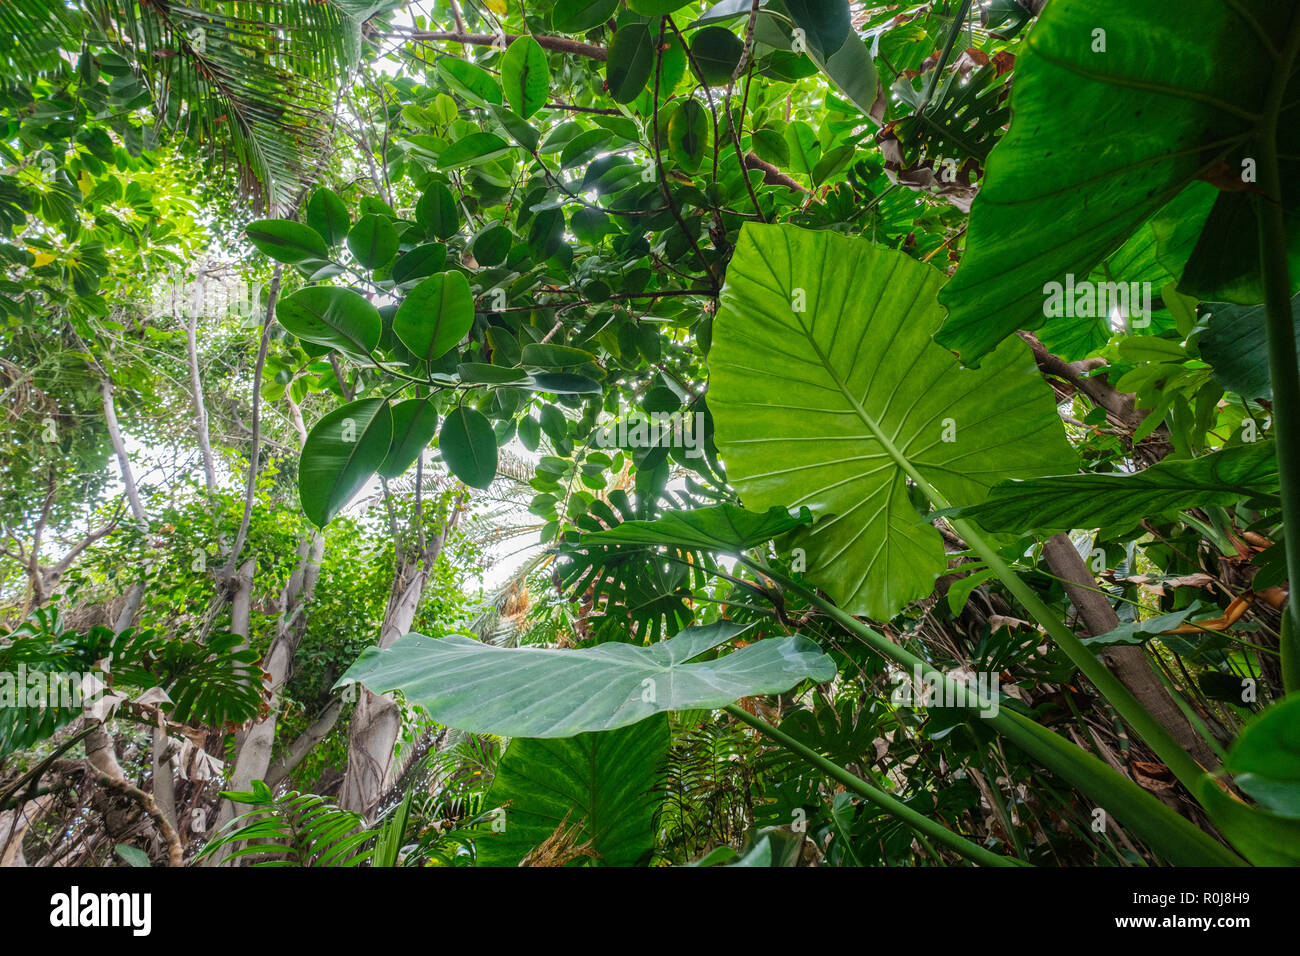 Plantes tropicales en forêt ou jungle / rainforest landscape Banque D'Images